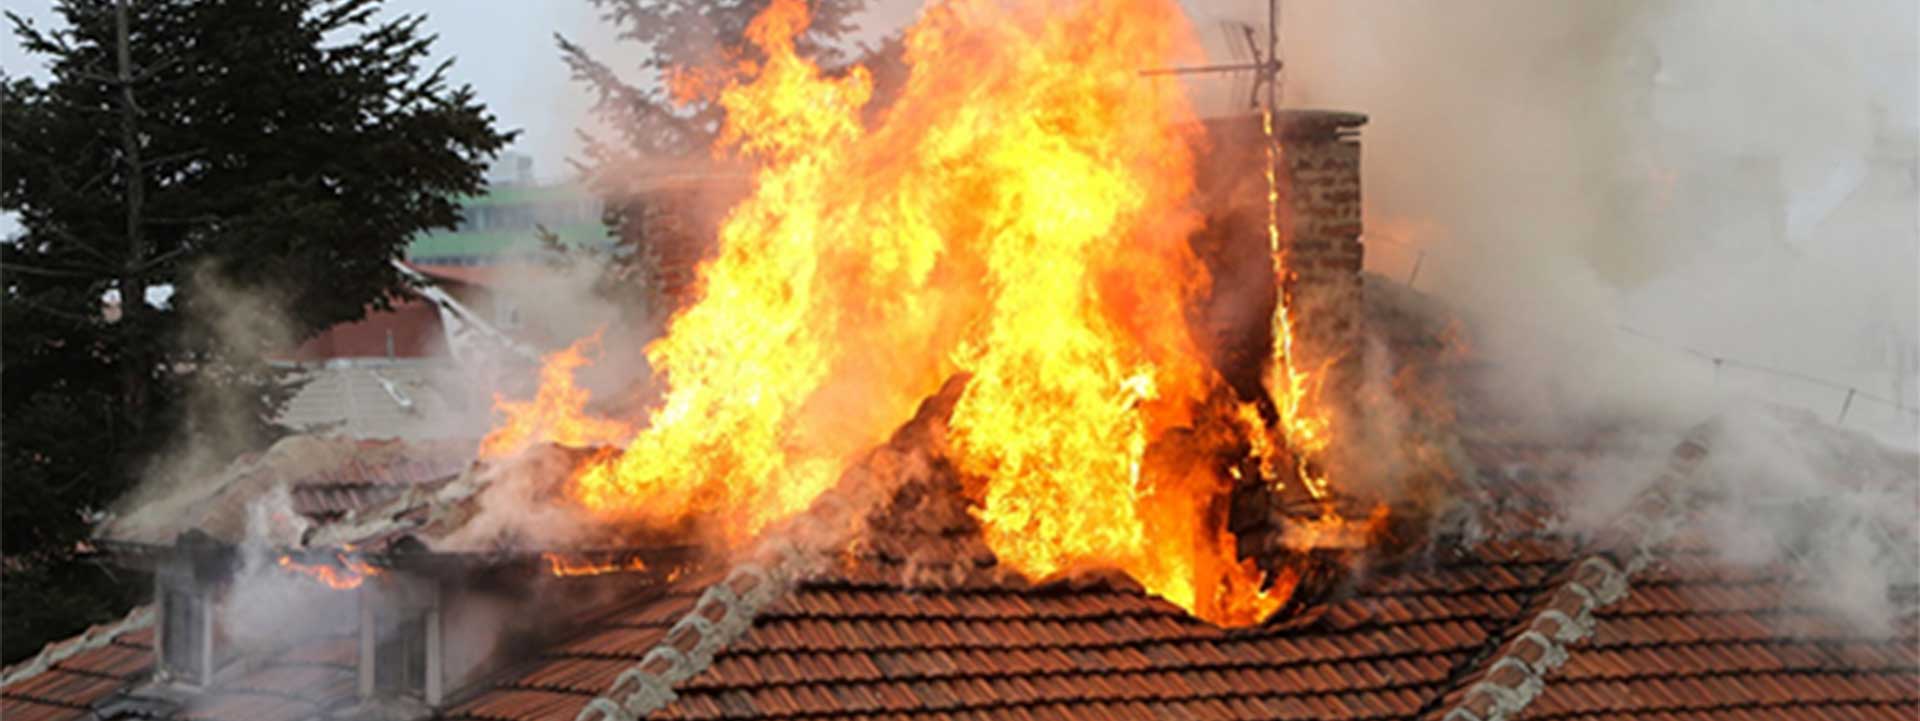 prévention des incendies domestiques et industriels